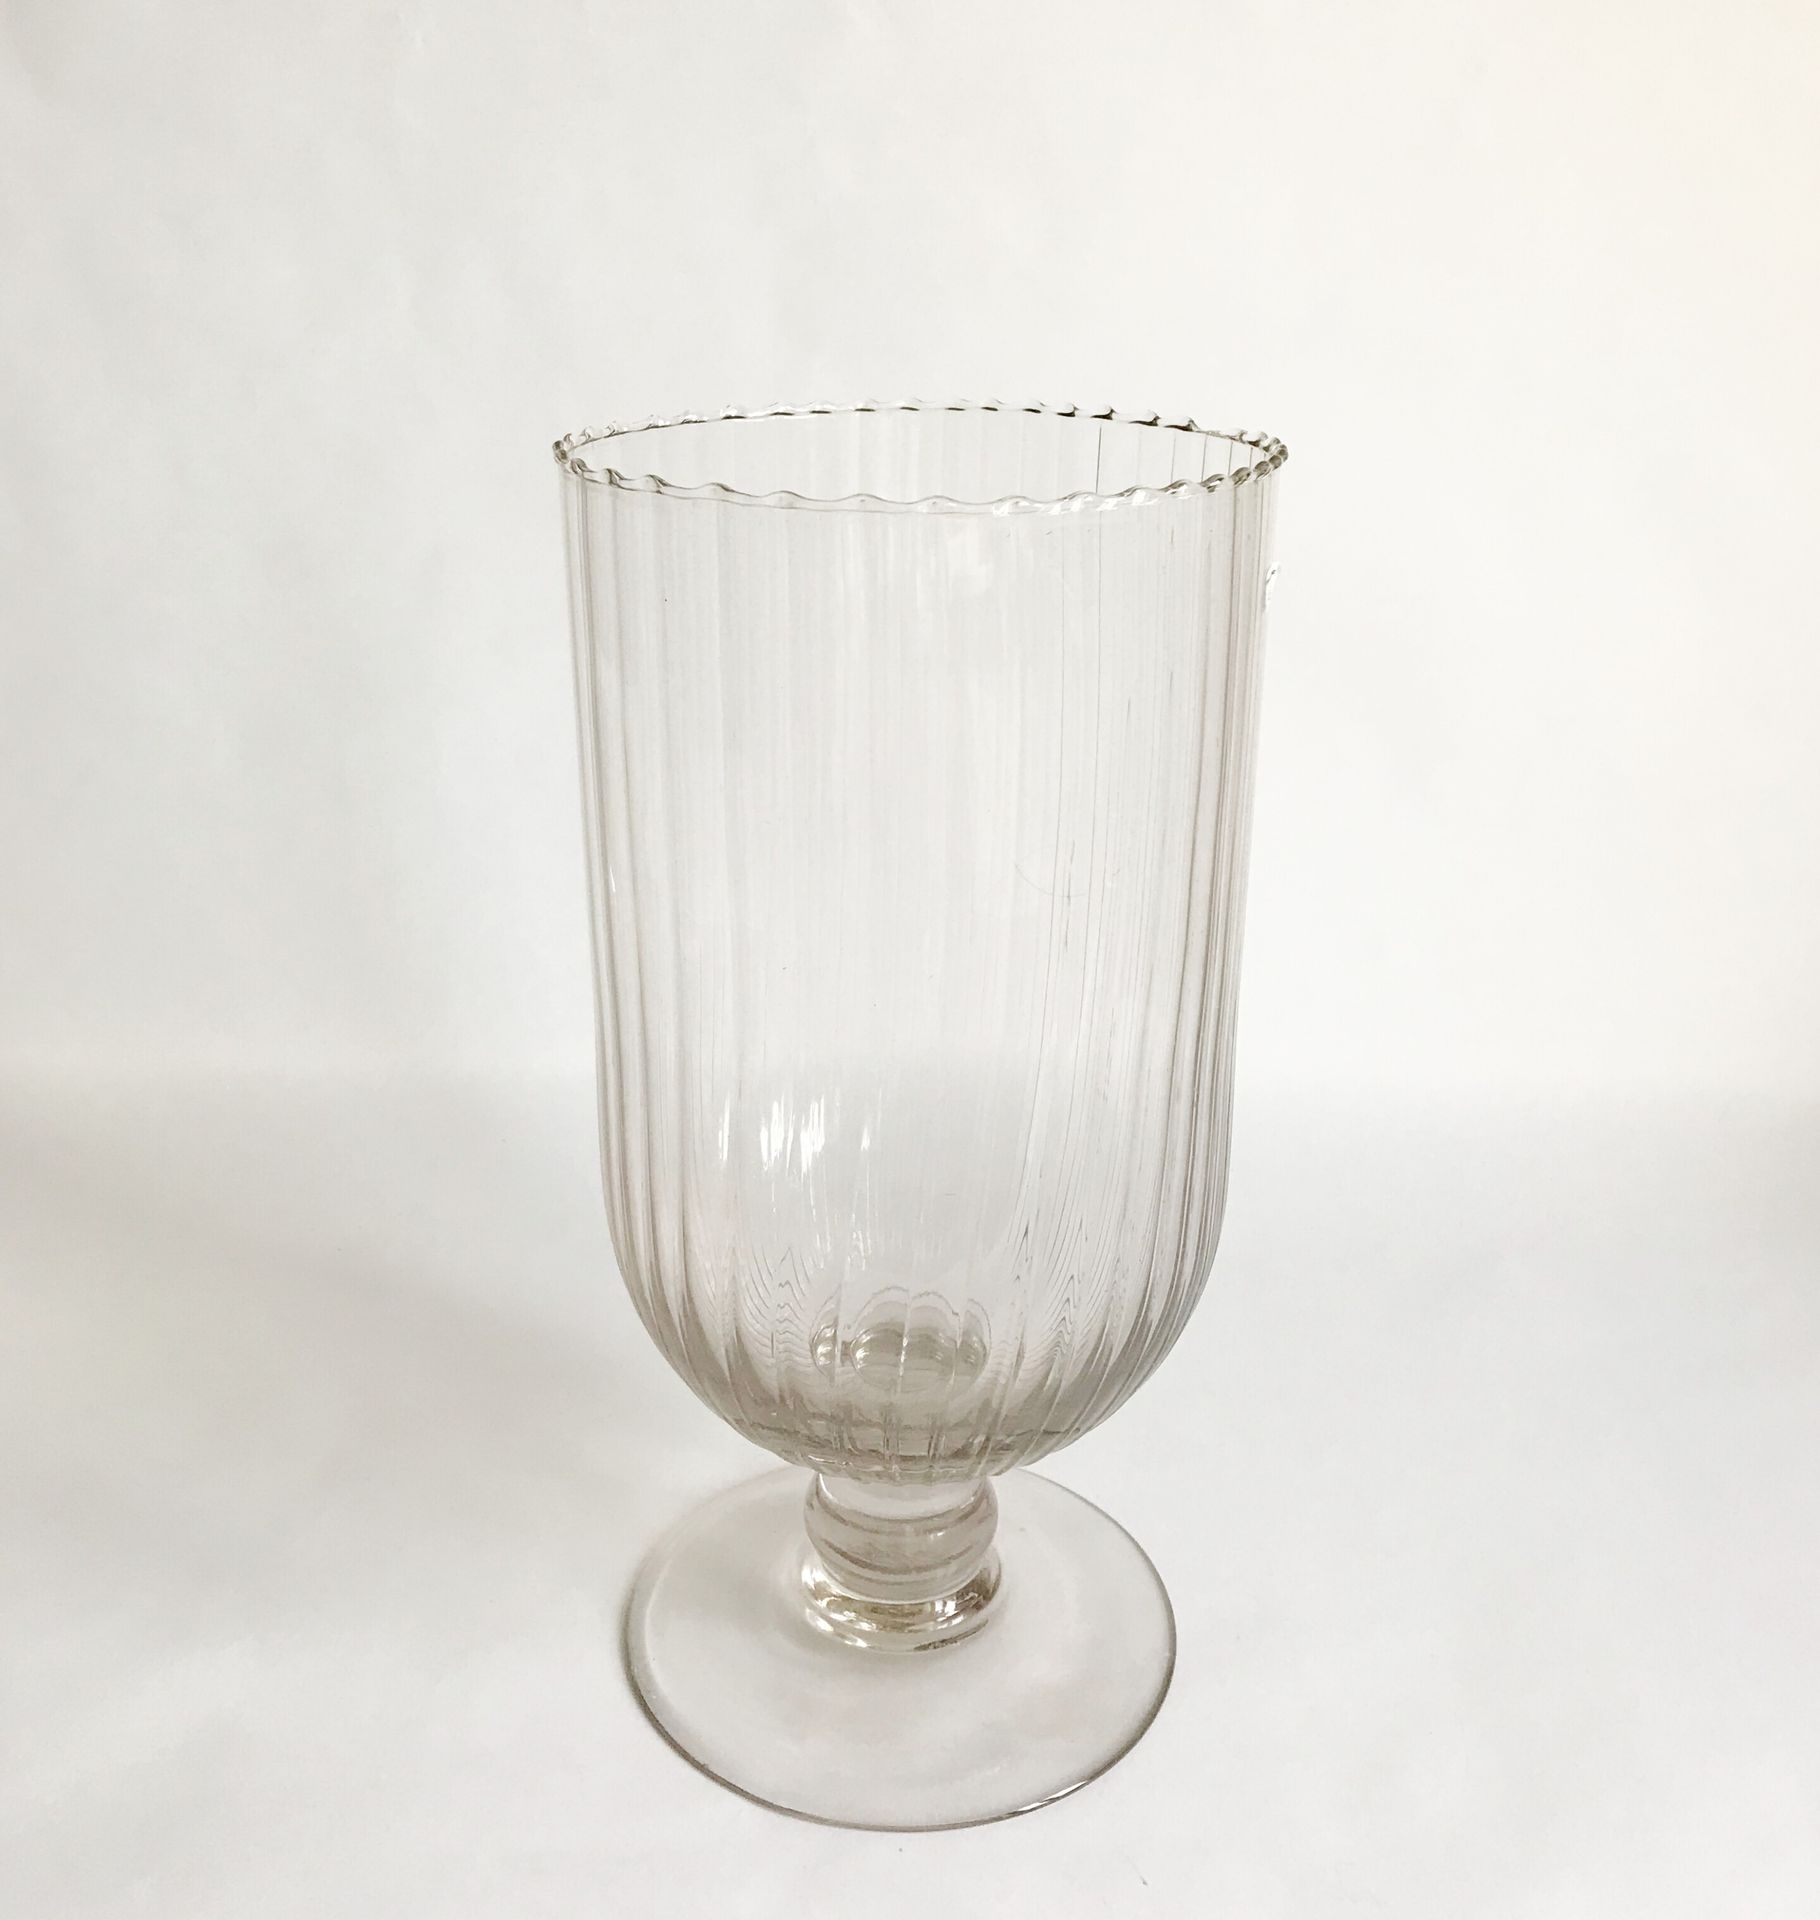 Null 一个大型的吹制玻璃花瓶，放在基座上，边缘有棱纹。

H.34厘米

边缘有轻微的缺口